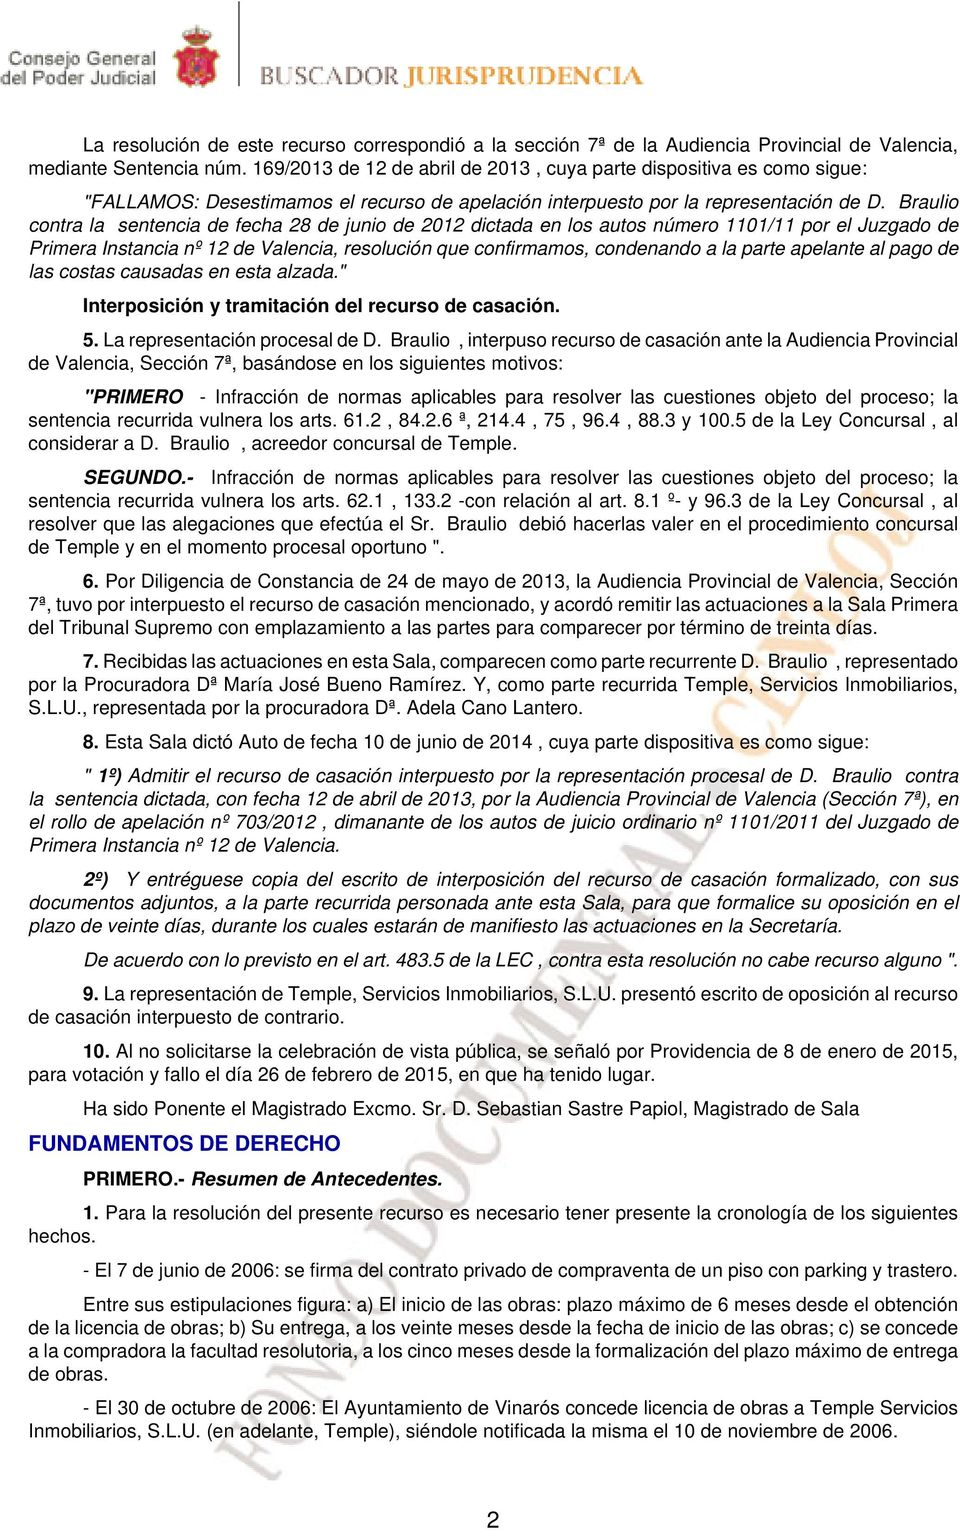 Braulio contra la sentencia de fecha 28 de junio de 2012 dictada en los autos número 1101/11 por el Juzgado de Primera Instancia nº 12 de Valencia, resolución que confirmamos, condenando a la parte